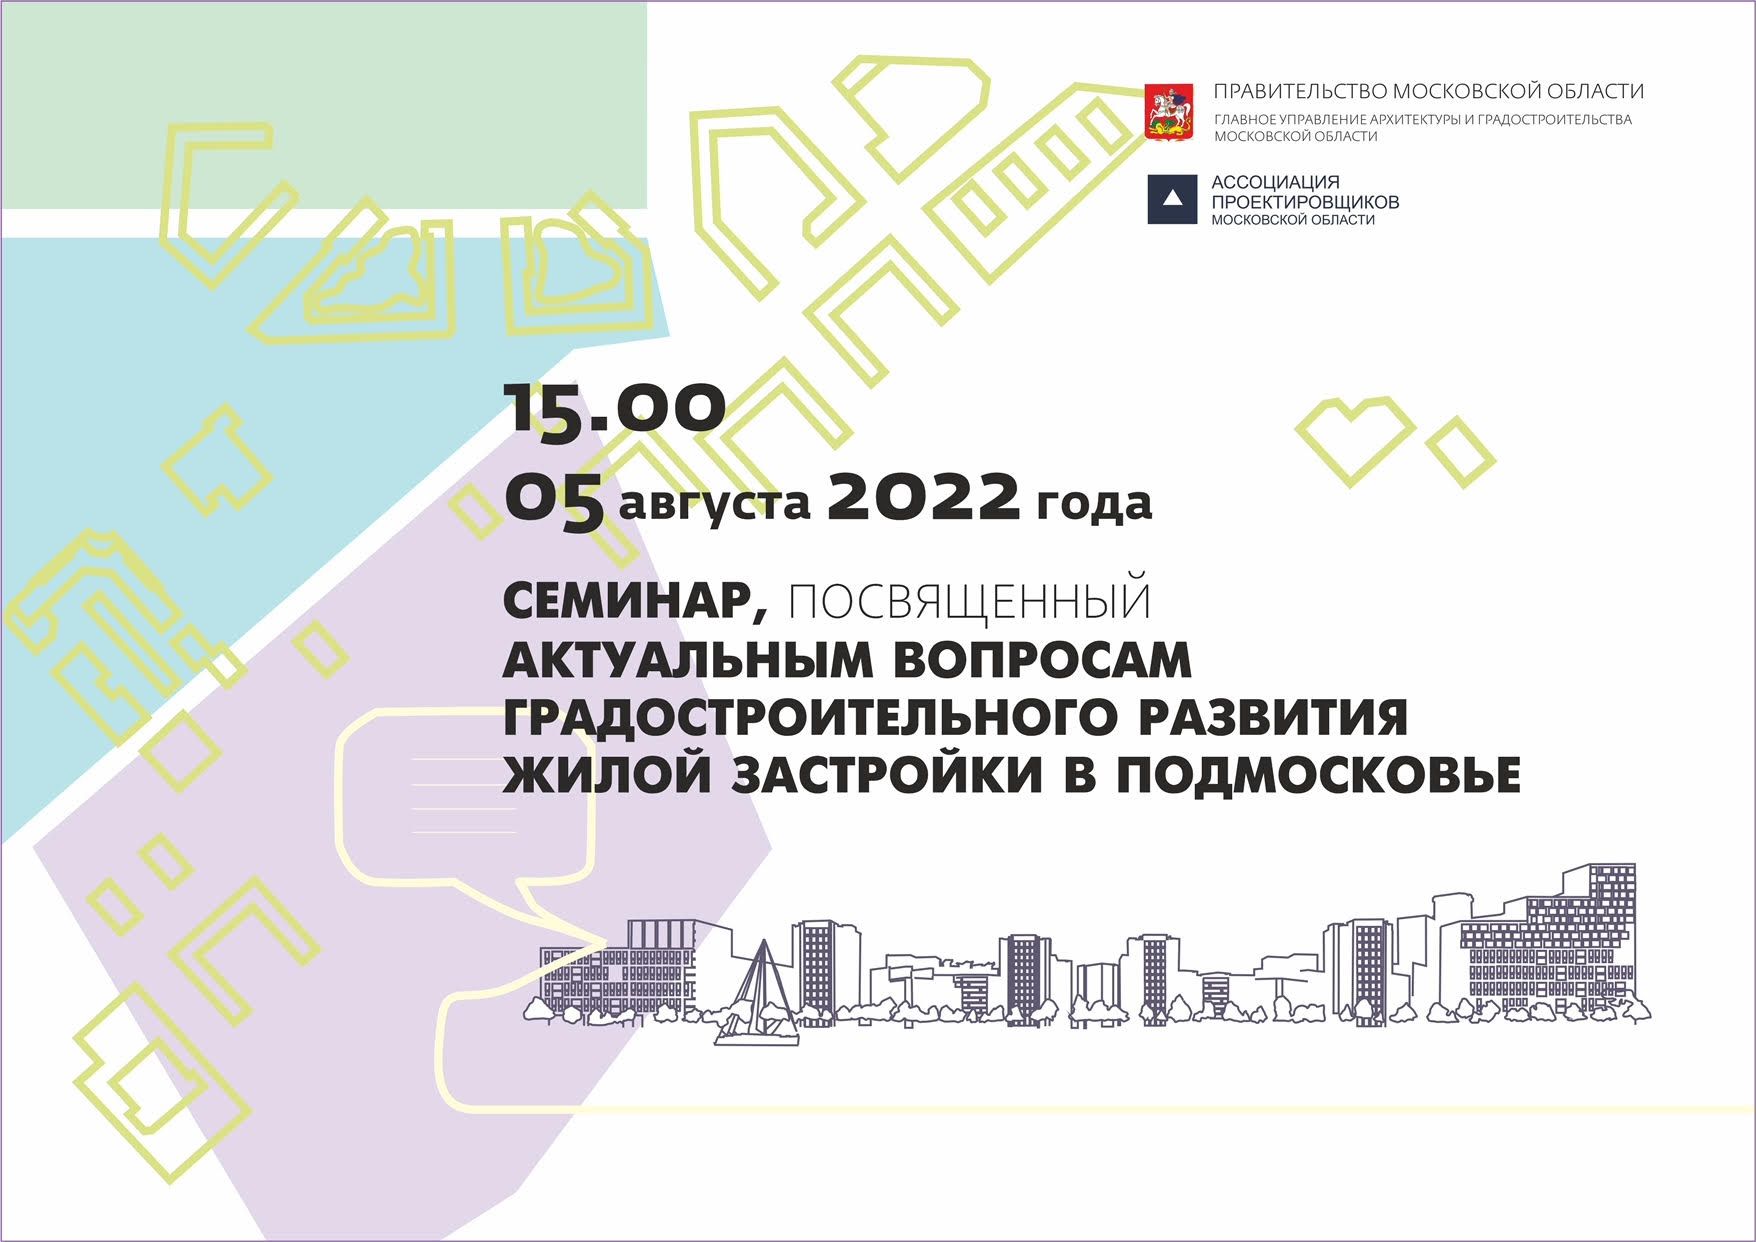 5 августа состоится семинар, посвященный вопросам градостроительного развития жилой застройки в Подмосковье